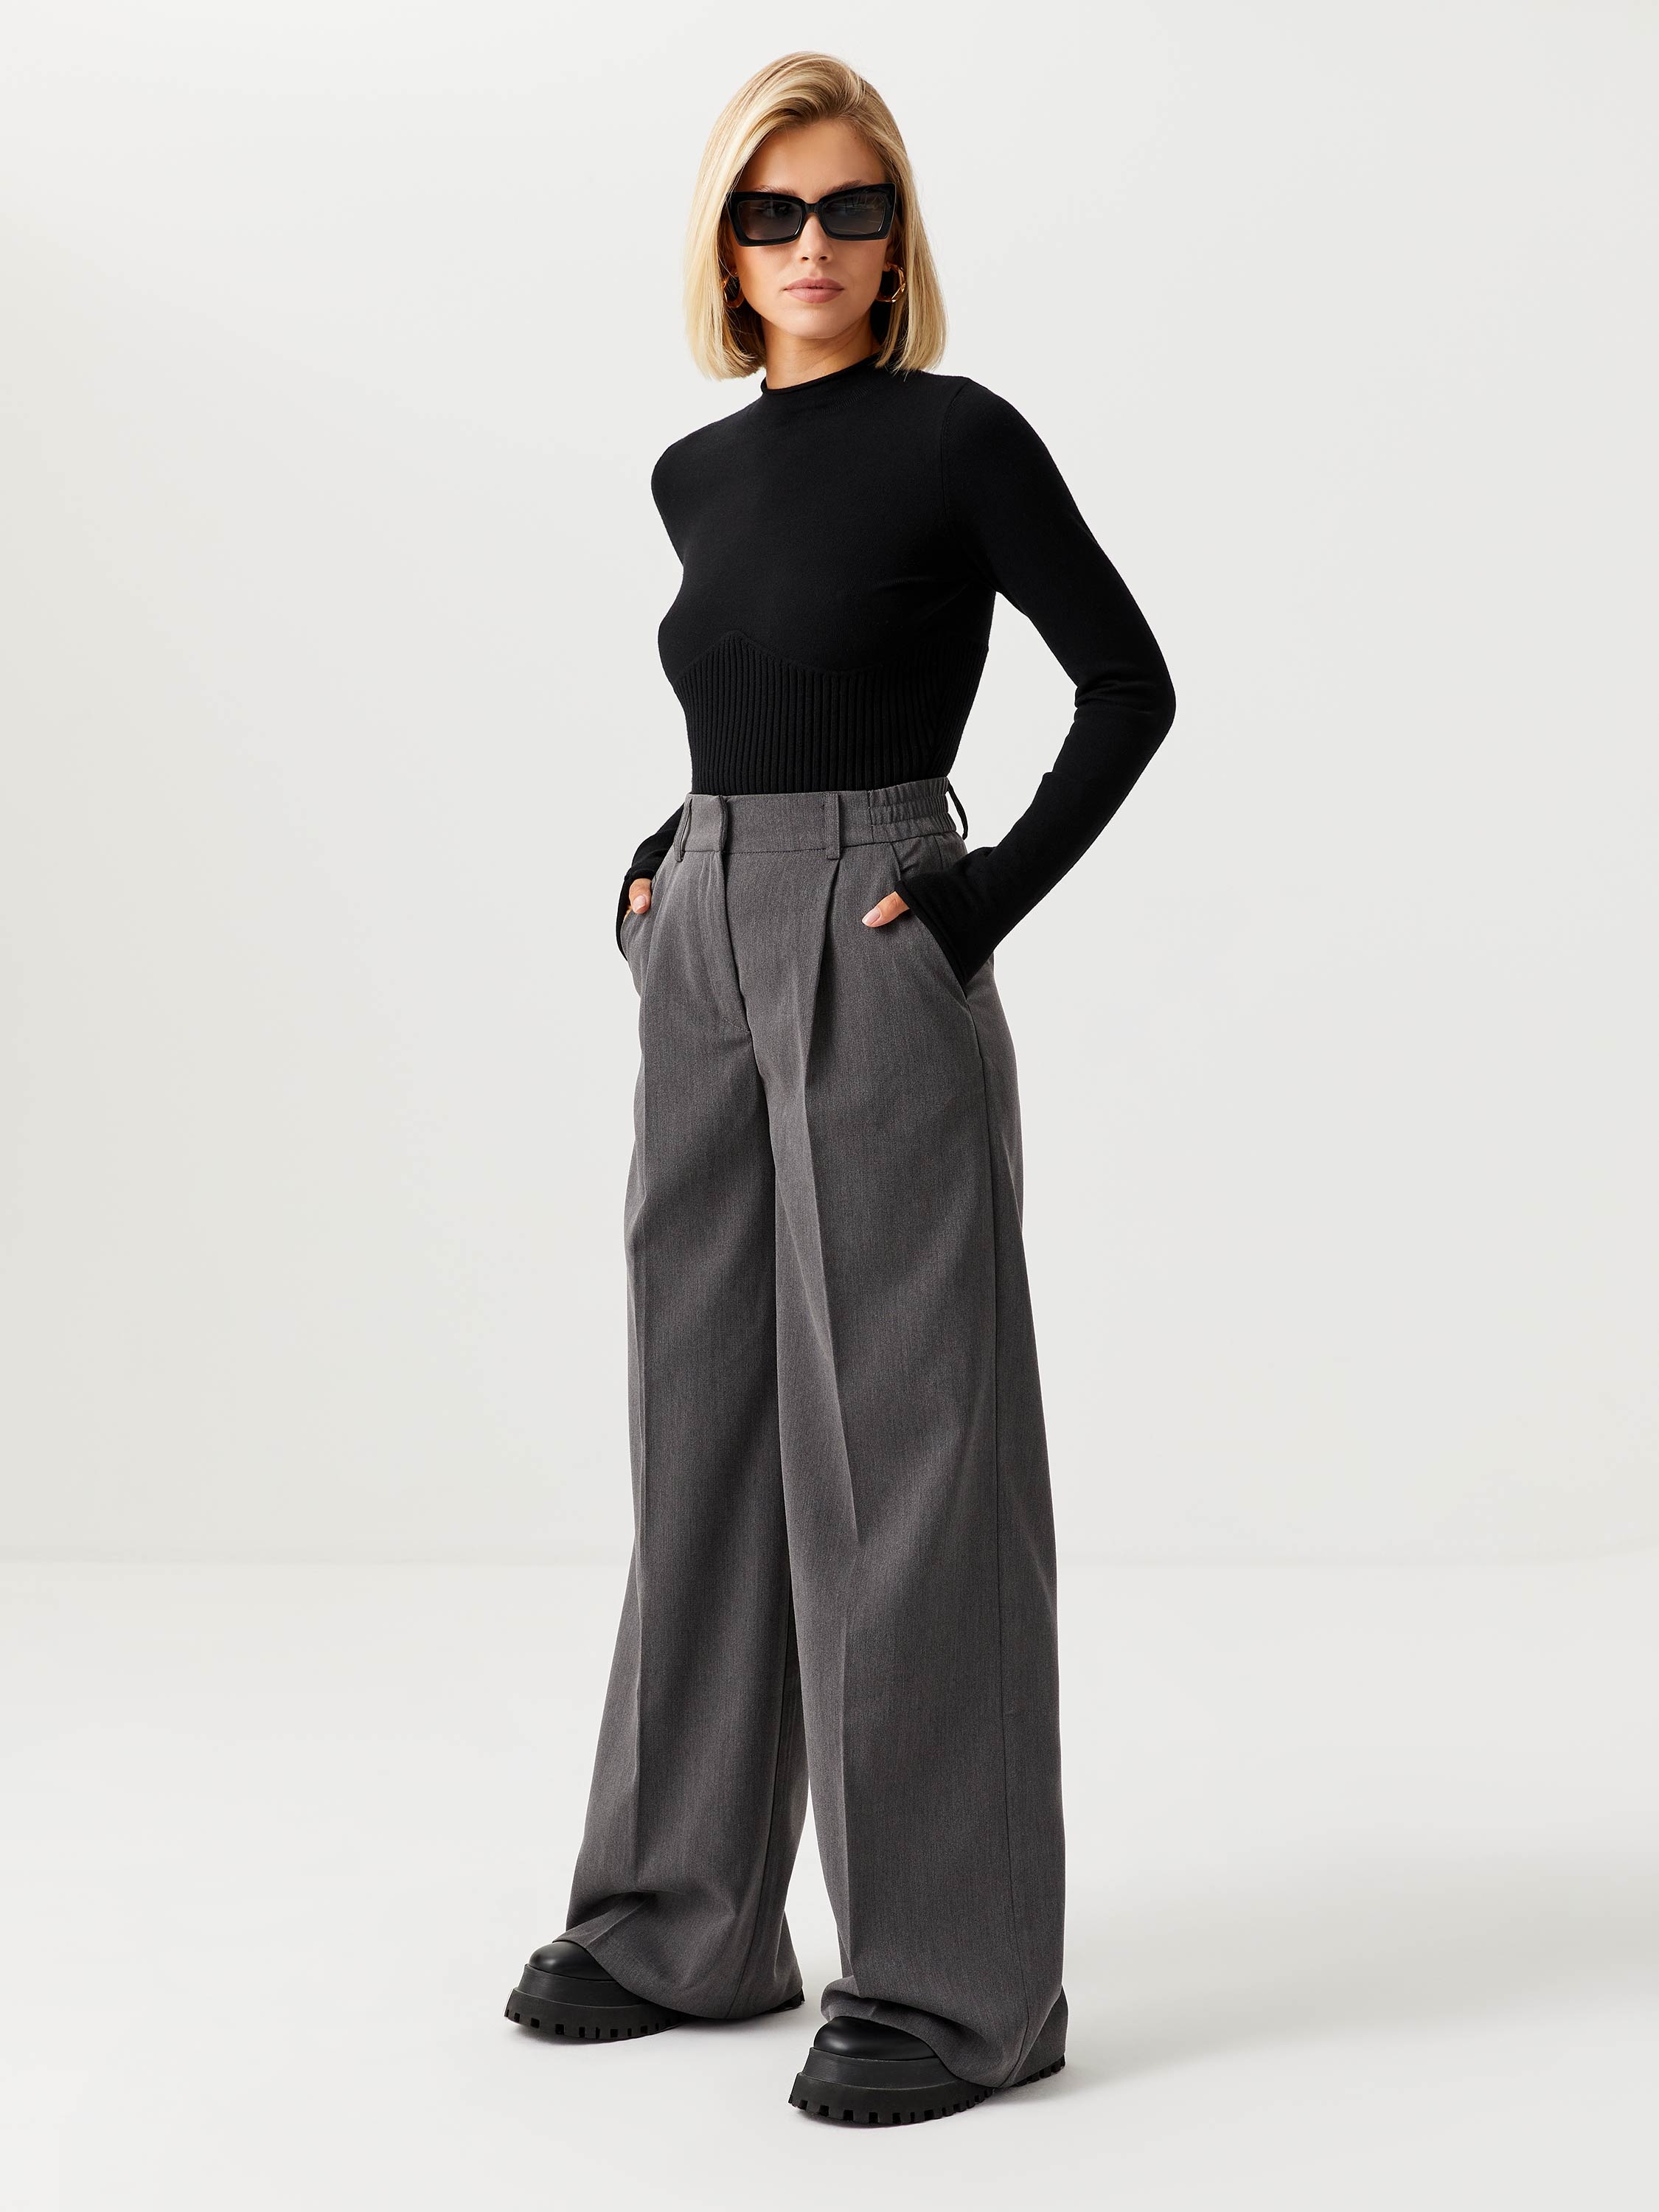 Широкие брюки со стрелками цвет: темно-серый меланж, артикул: 1808011525 –купить в интернет-магазине sela